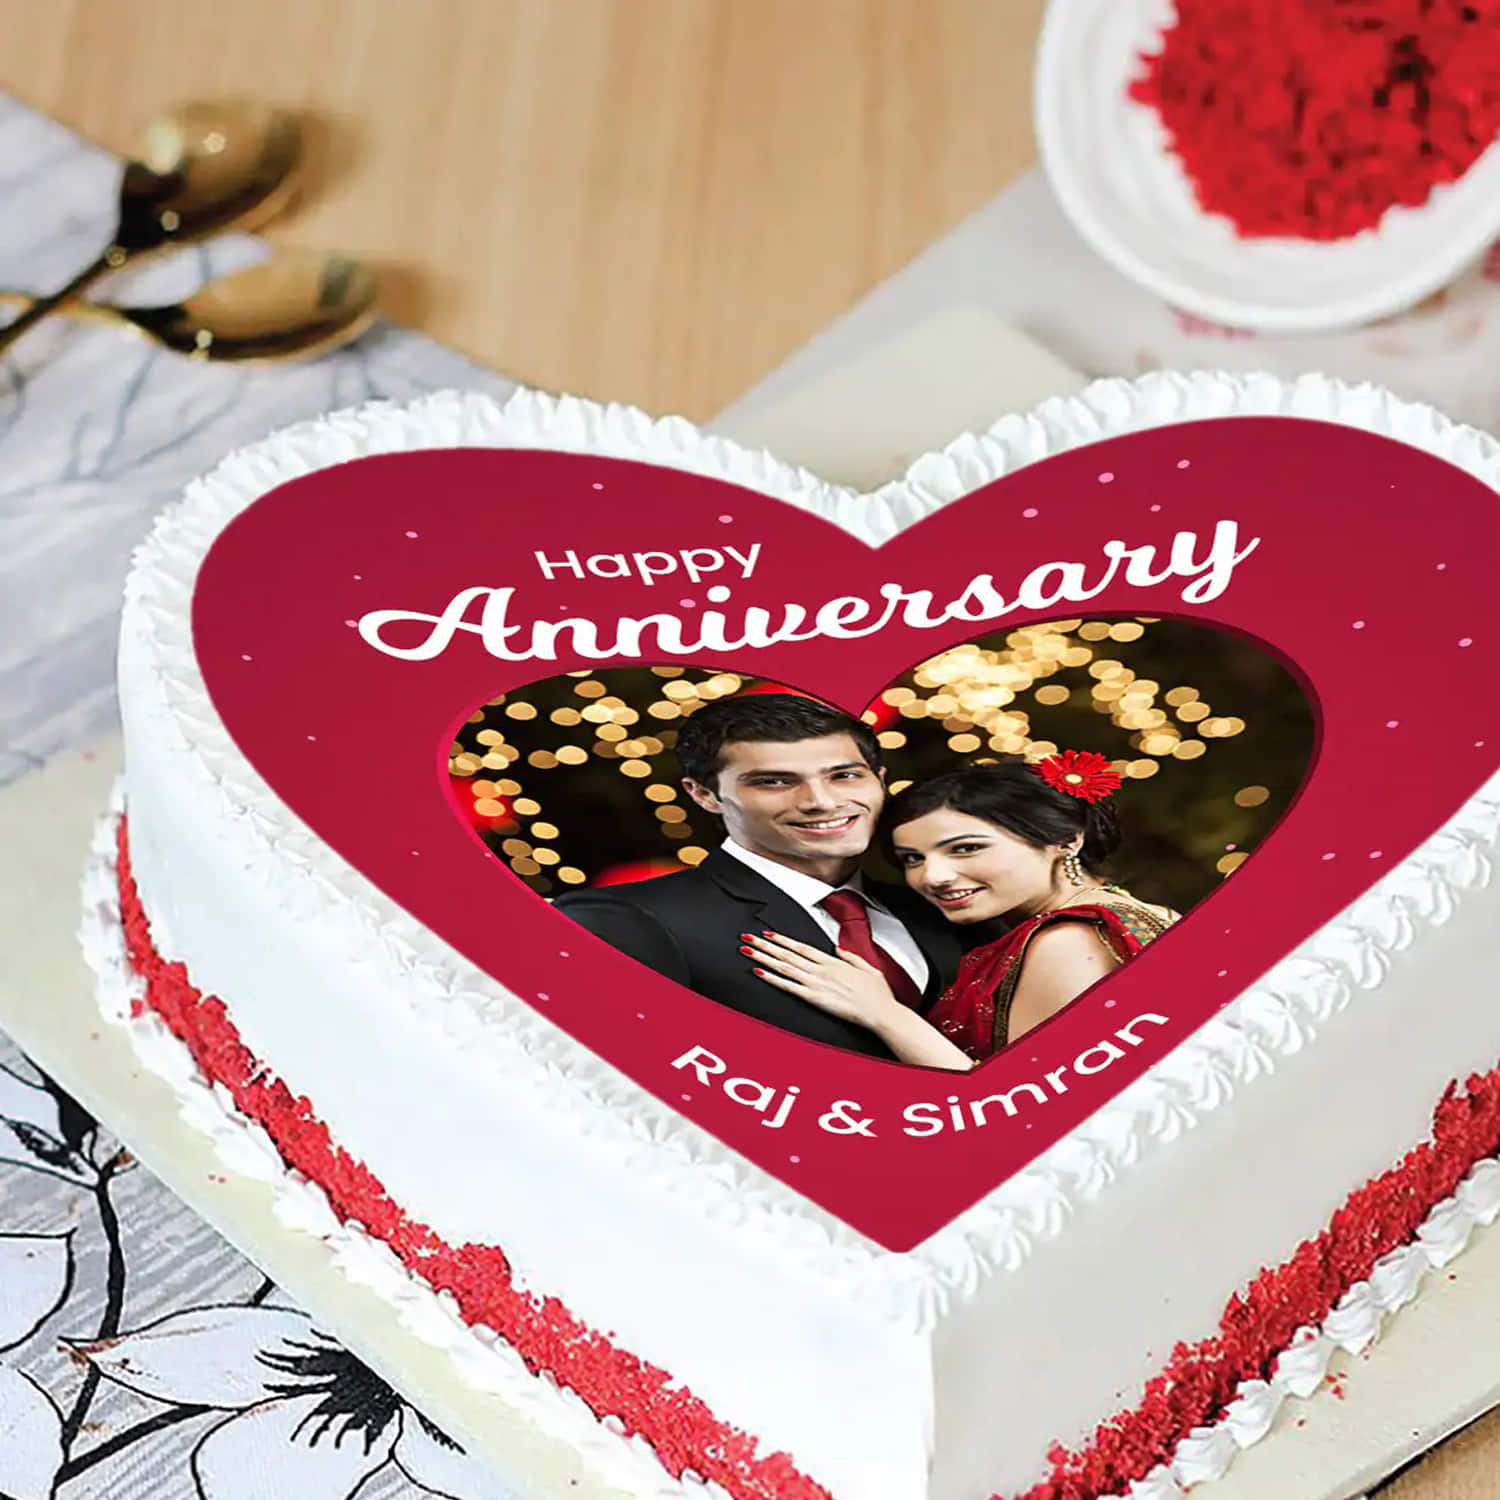 Aniversary cake | Anniversary cake designs, Aniversary cakes, Chocolate cake  designs